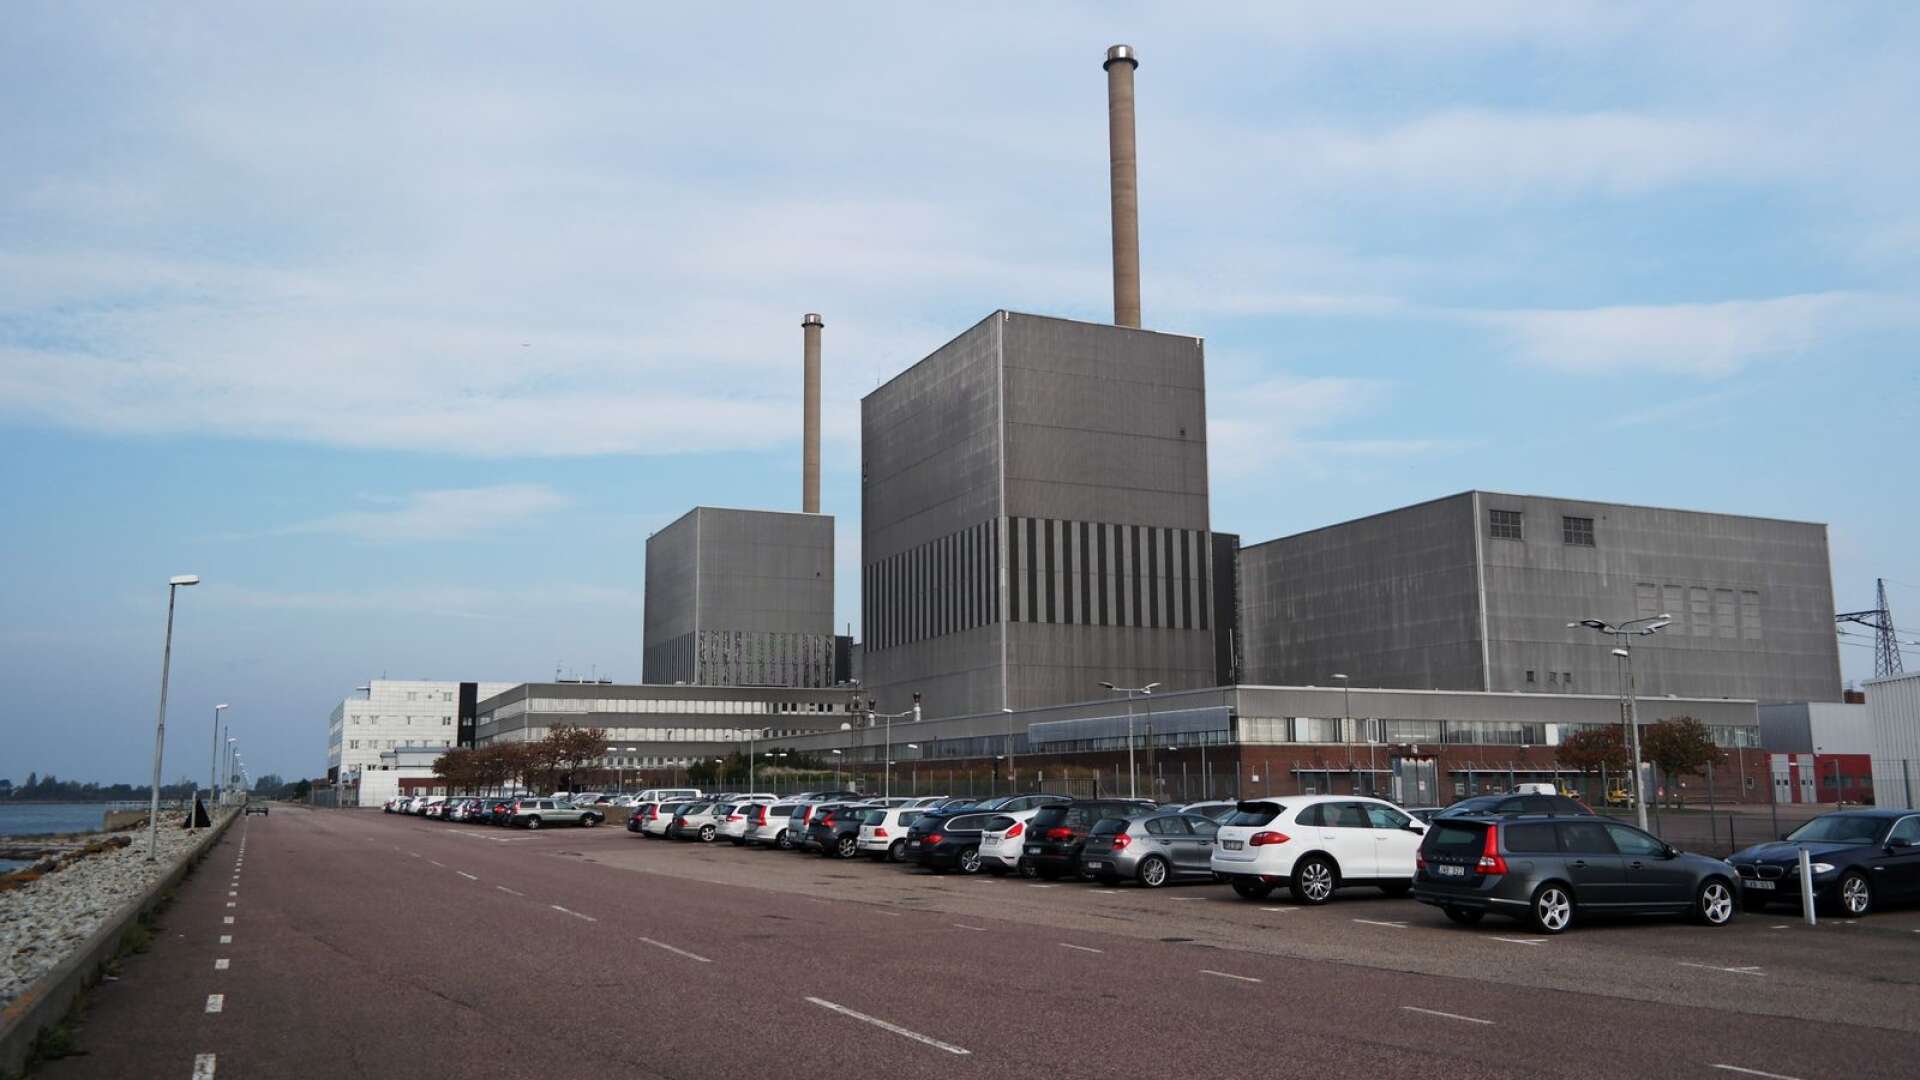 Sverige som industrination behöver ett modernt och tillförlitligt kraftsystem där alla fossilfria alternativ behövs, skriver Mattias Bäckström Johansson.